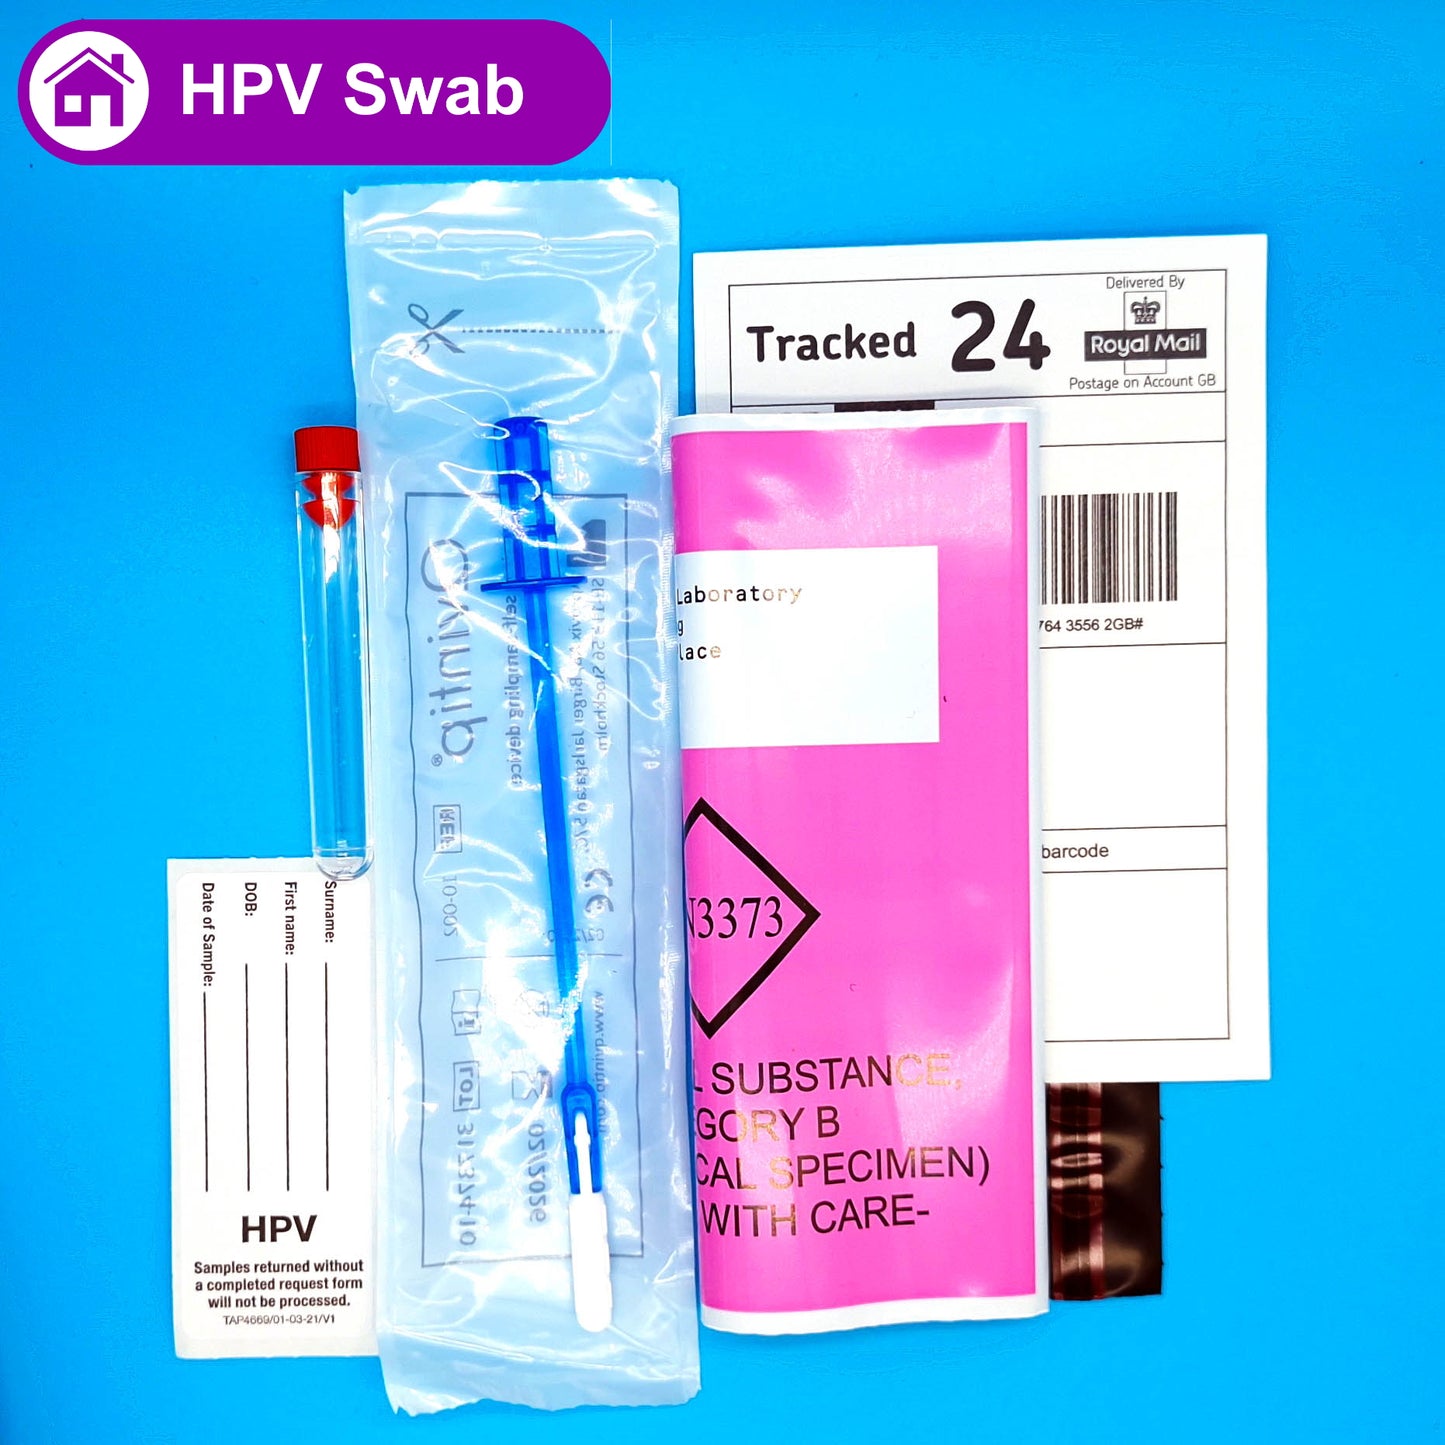 Home HPV Test (Human Papilloma Virus) for Women